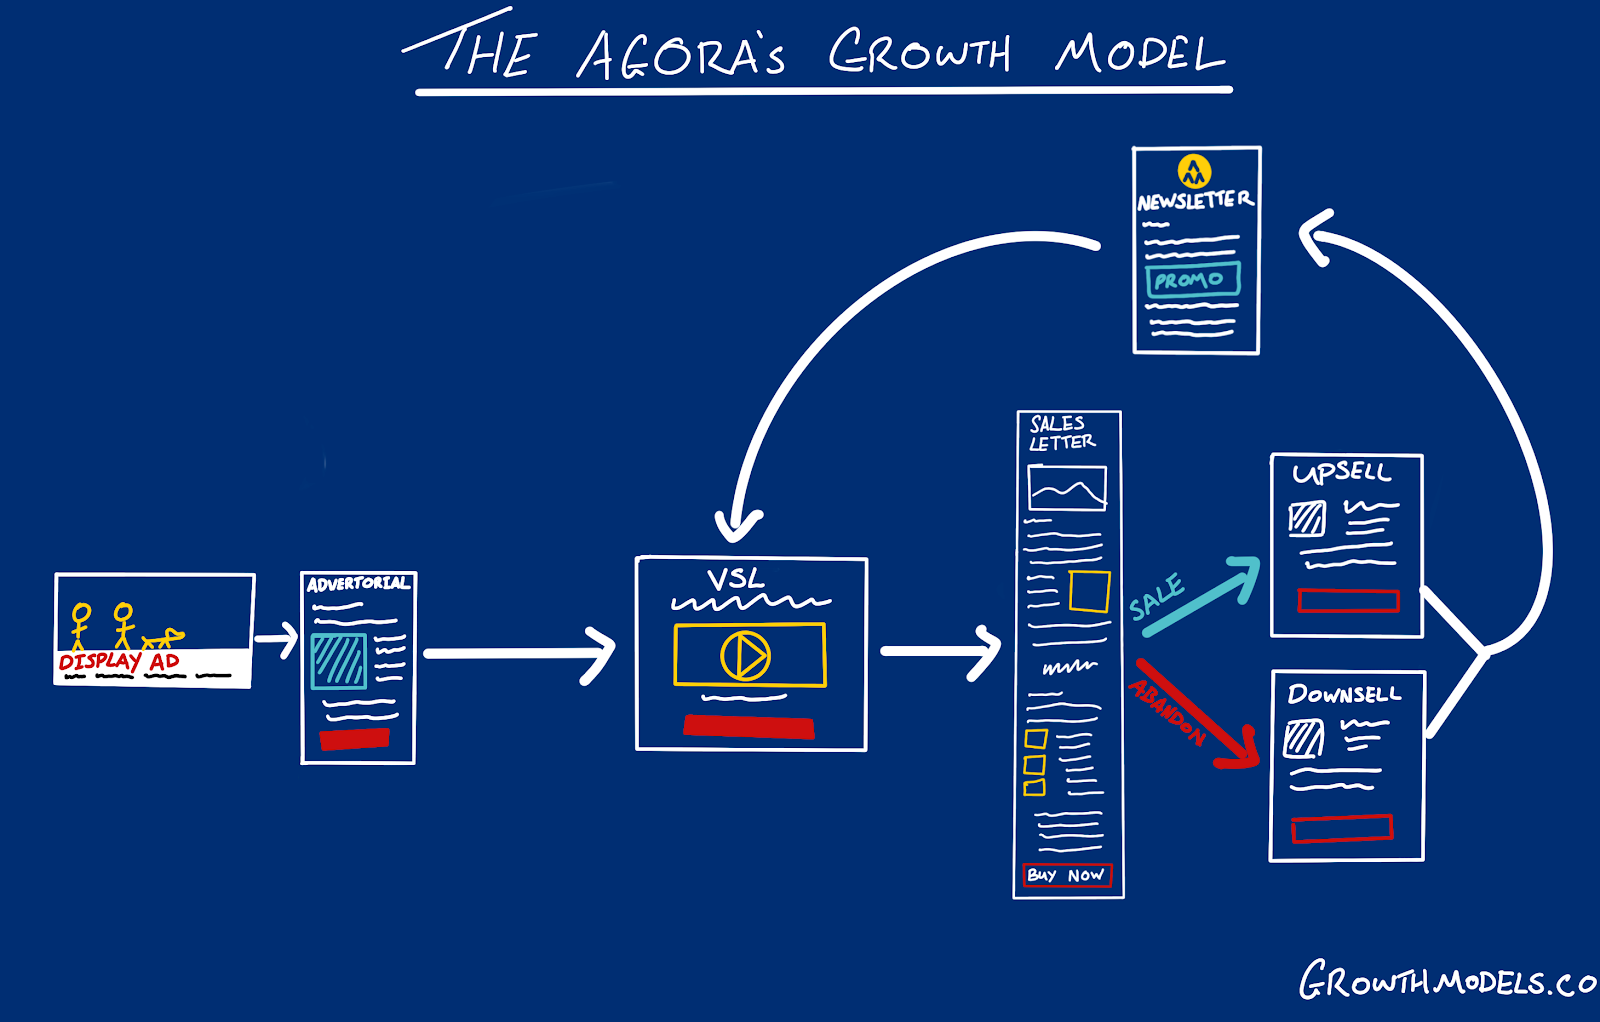 The basic Agora Growth Model